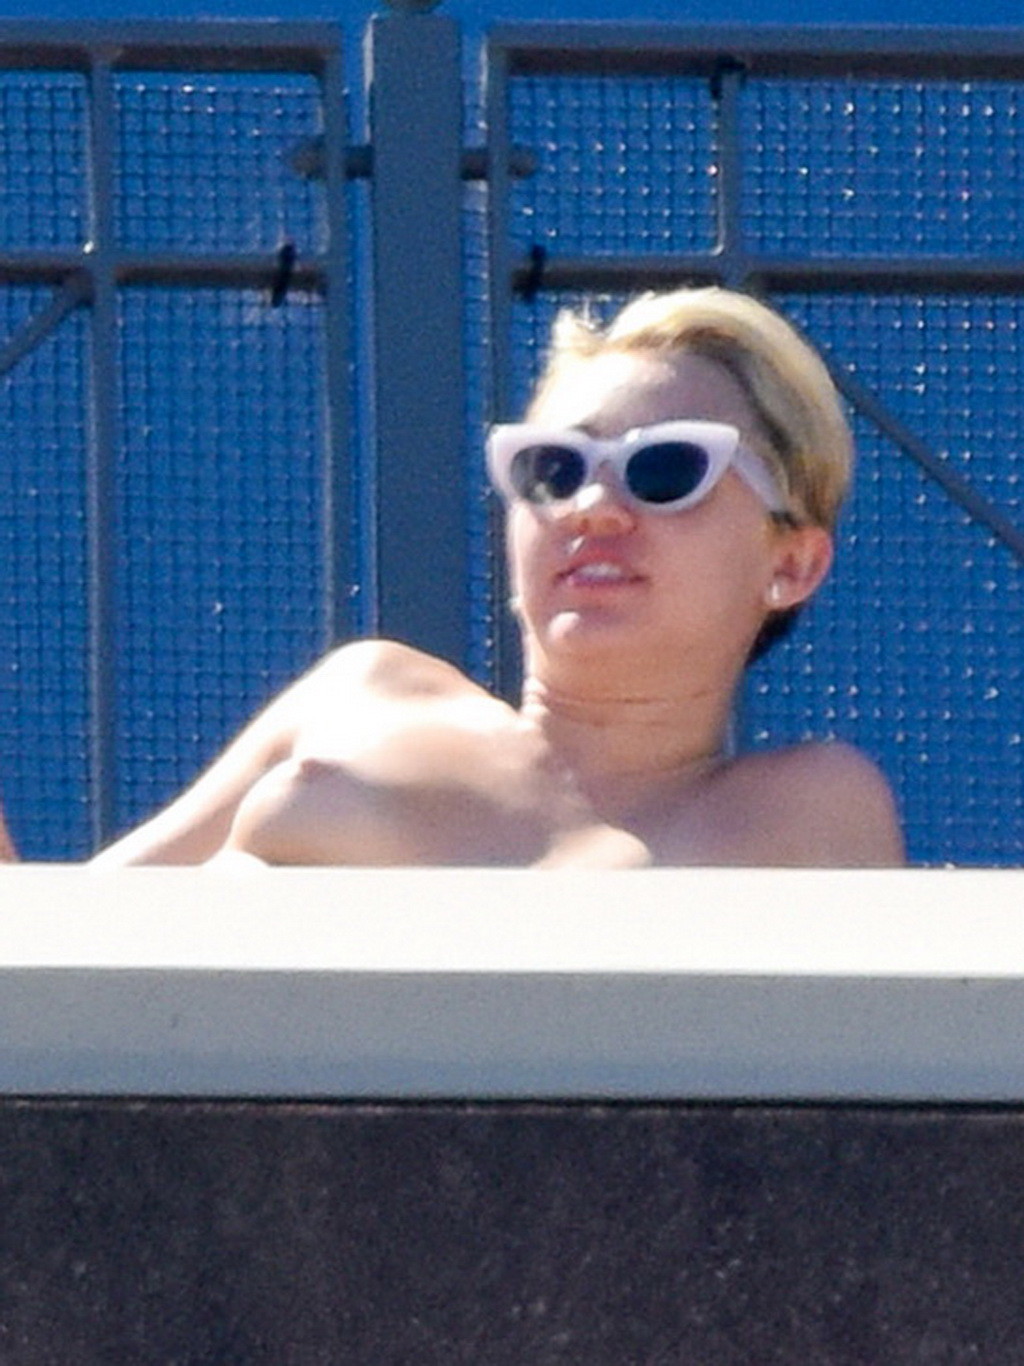 Miley cyrus bräunt sich oben ohne auf dem Hotelbalkon in sydney
 #75183706